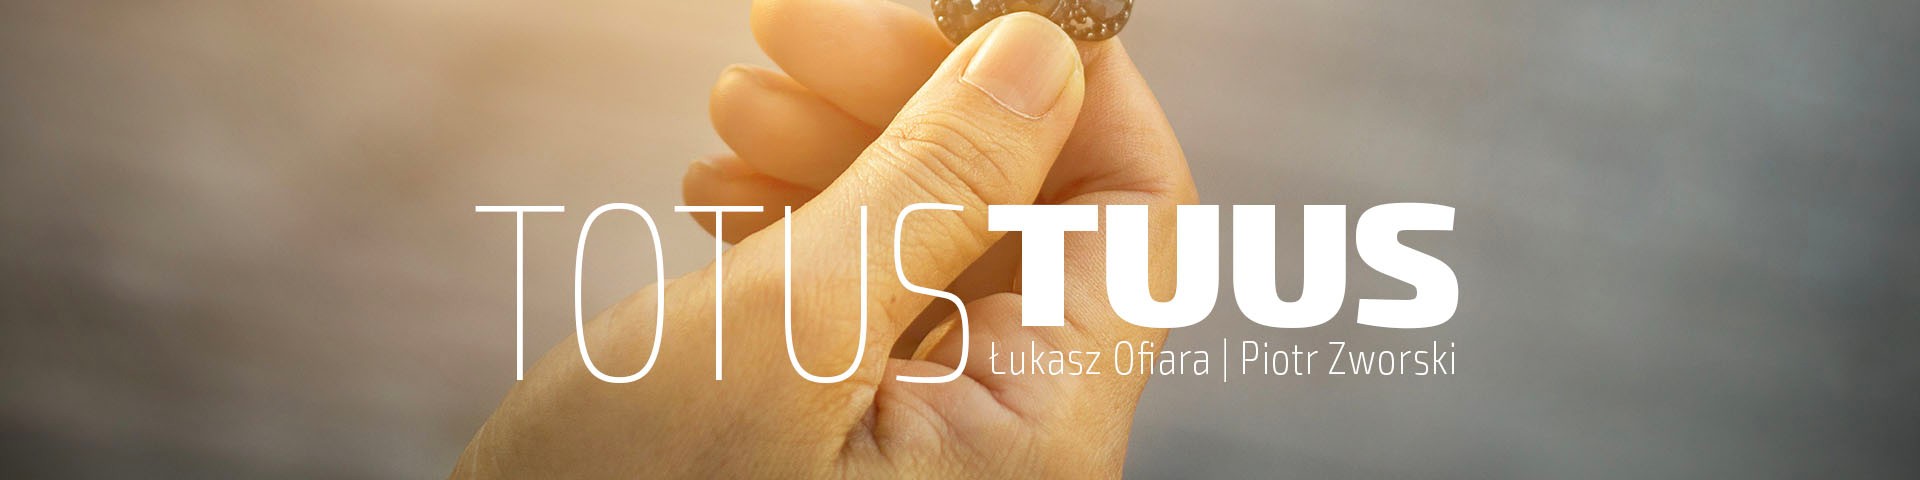 Totus Tuus - 2019-10-11 (audio)